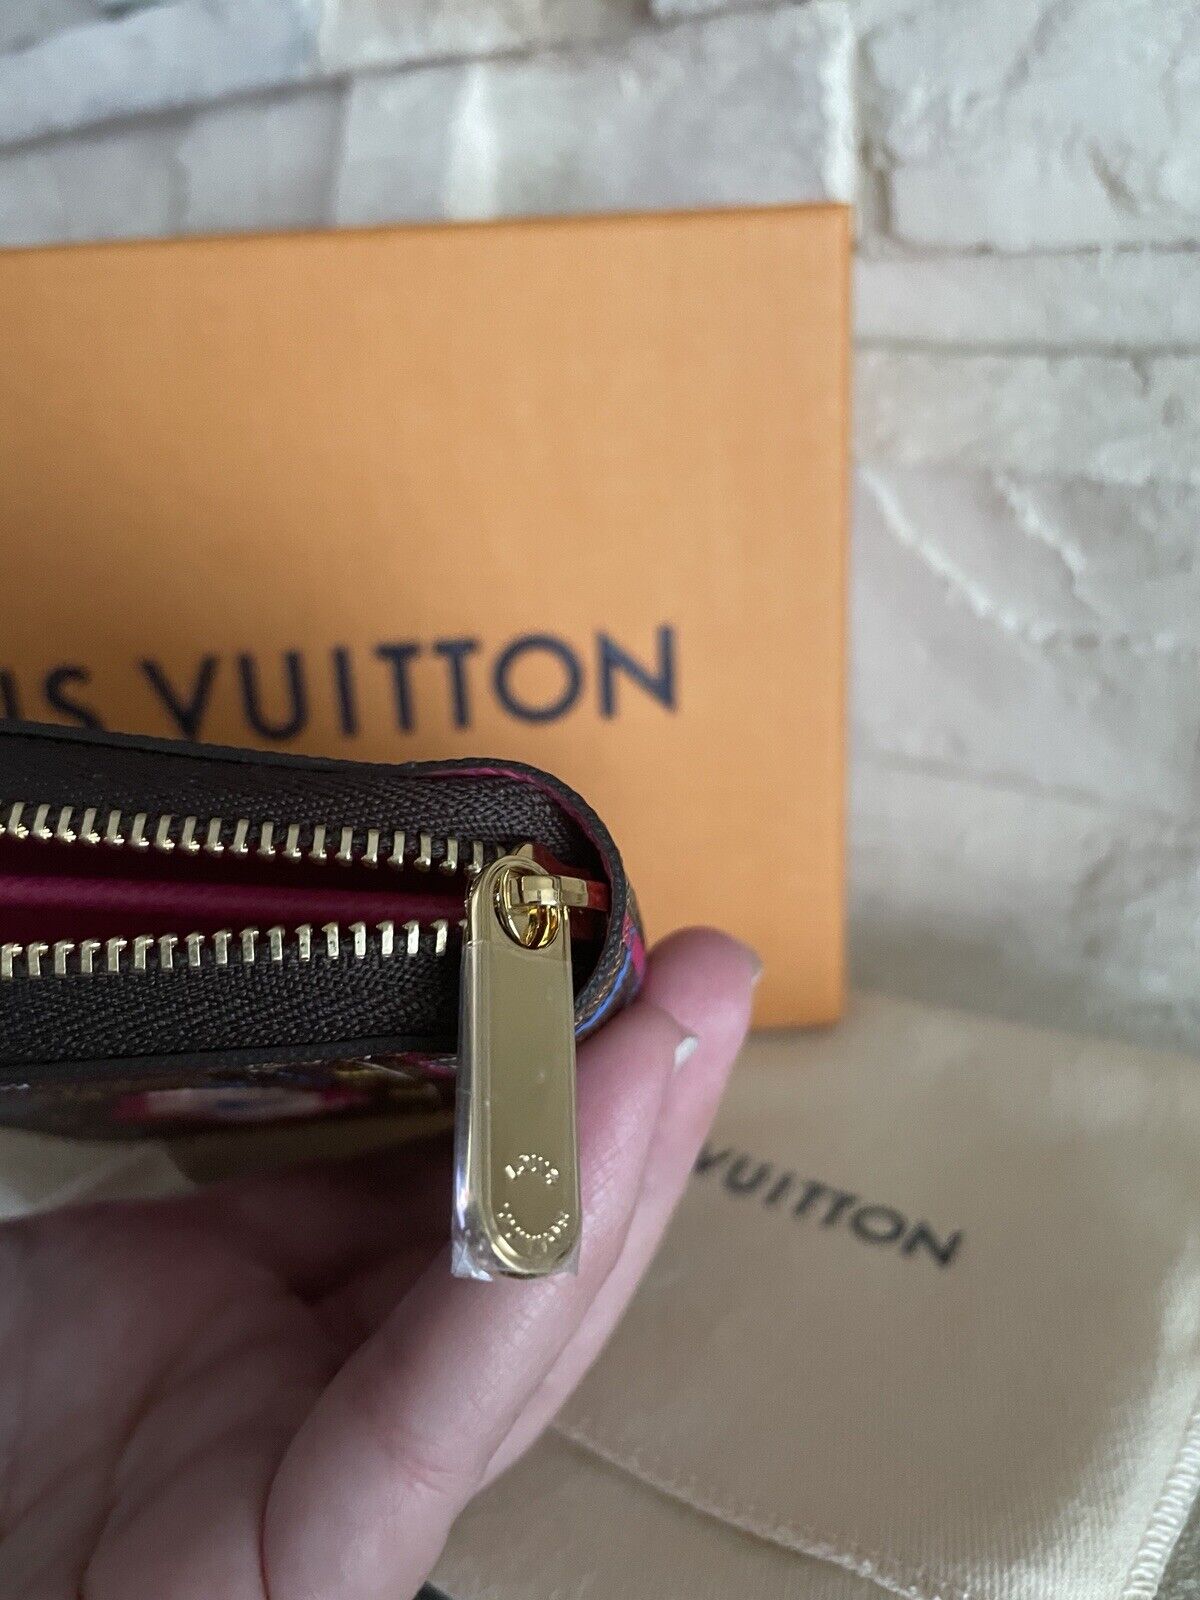 Louis Vuitton Wallet Compact Zippy Damier Ebene Coin Purse in Box